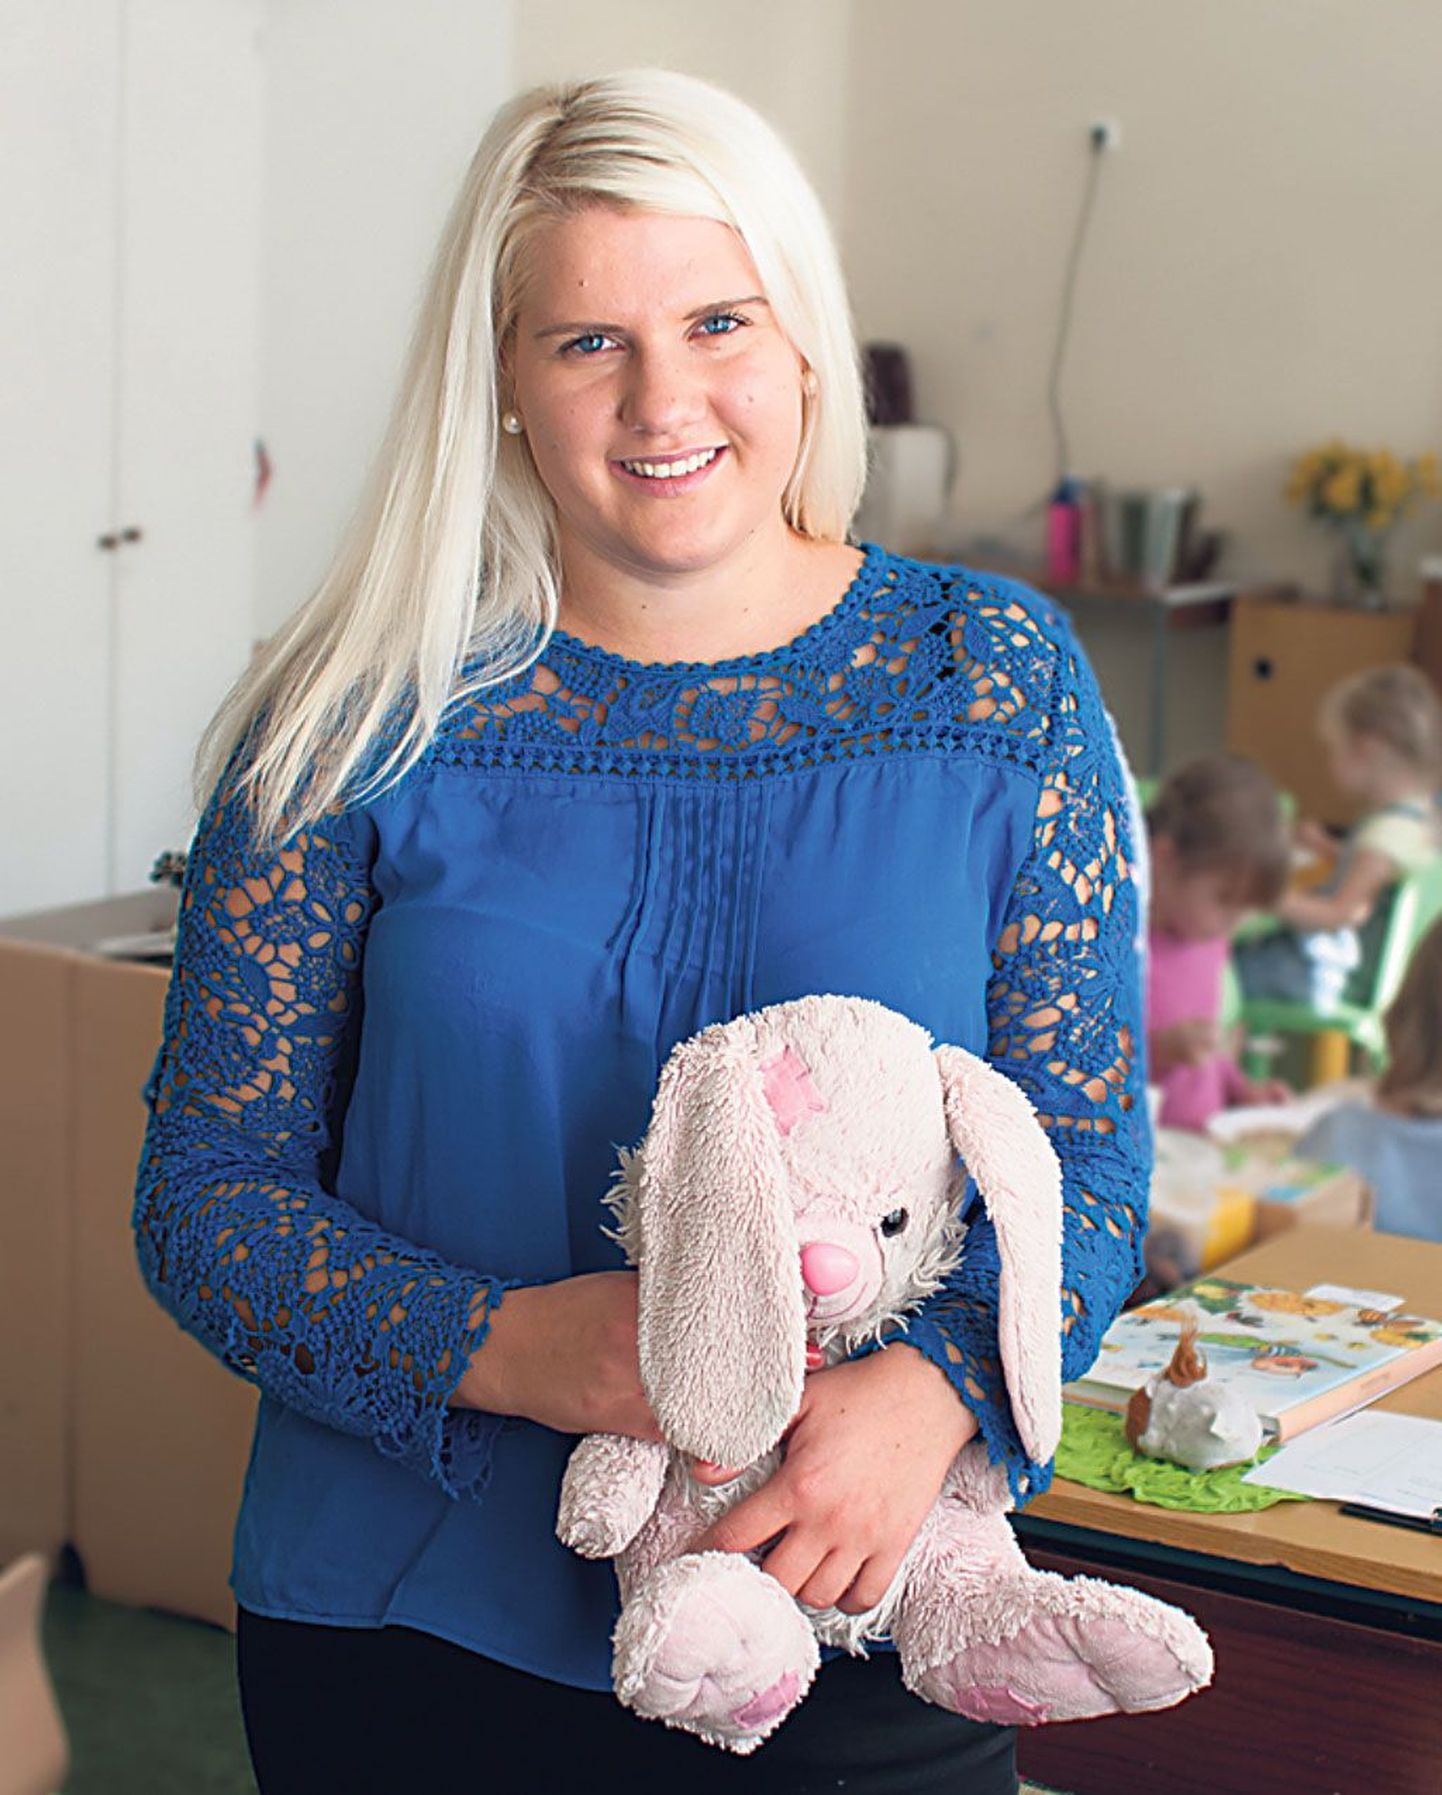 Liisi Laidvee lõpetas Tallinna ülikoolis rakenduskõrghariduse koolieelse lasteasutuse õpetaja õppekava cum laude ja alustas 1. septembrist tööd Pöialpoisi lasteaias.